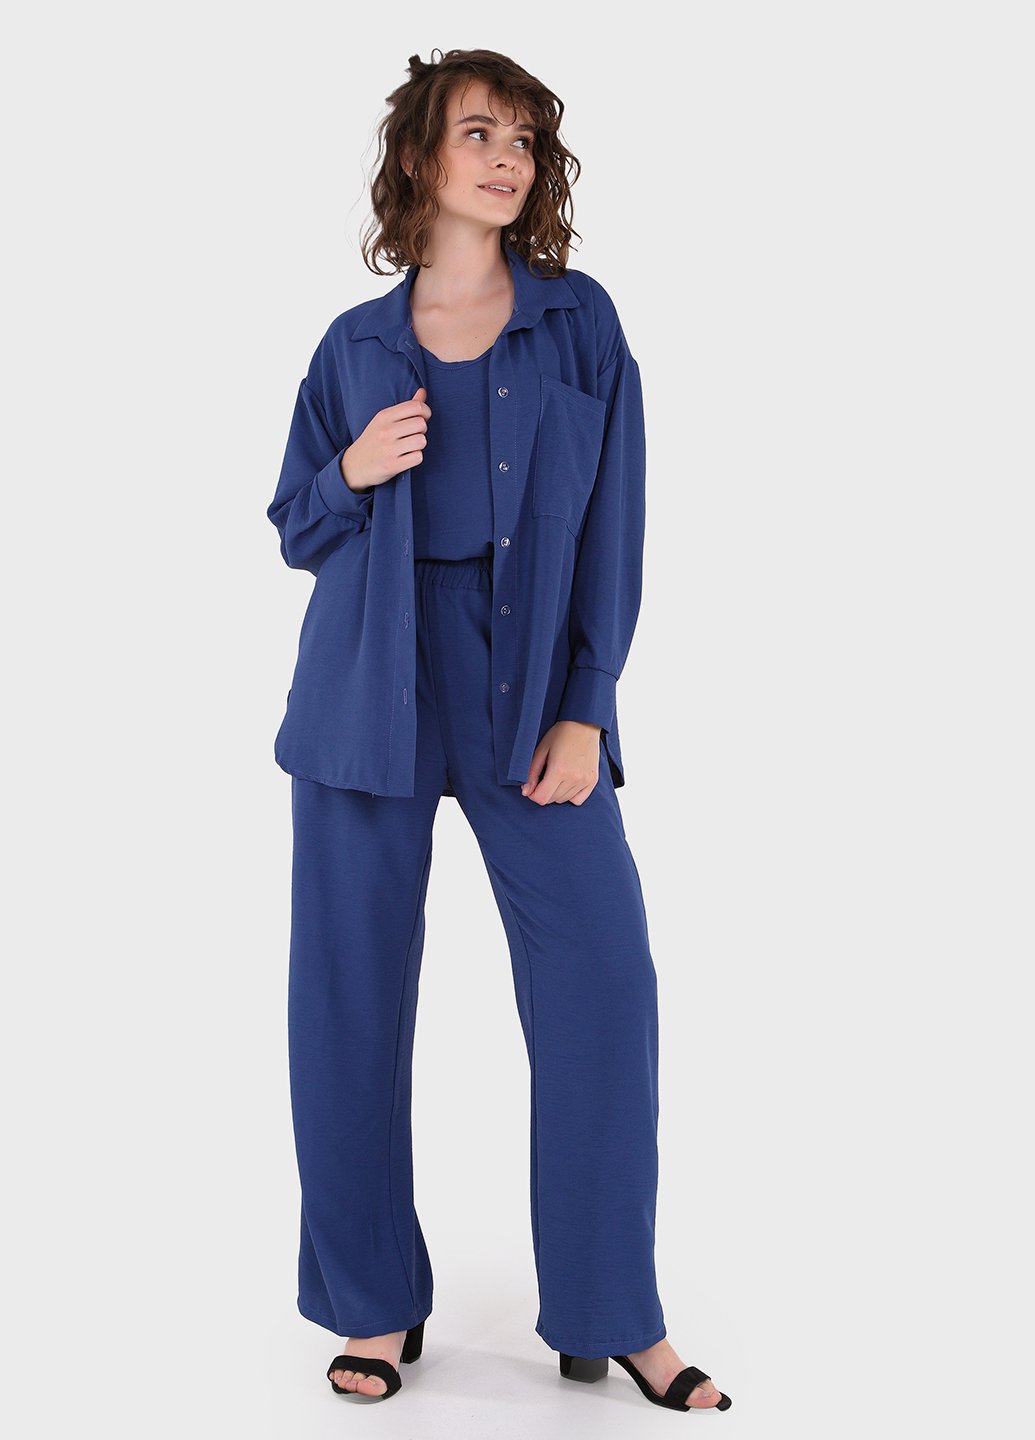 Купить Модный летний костюм женский синего цвета Merlini Тройка 100000127, размер 42-44 в интернет-магазине